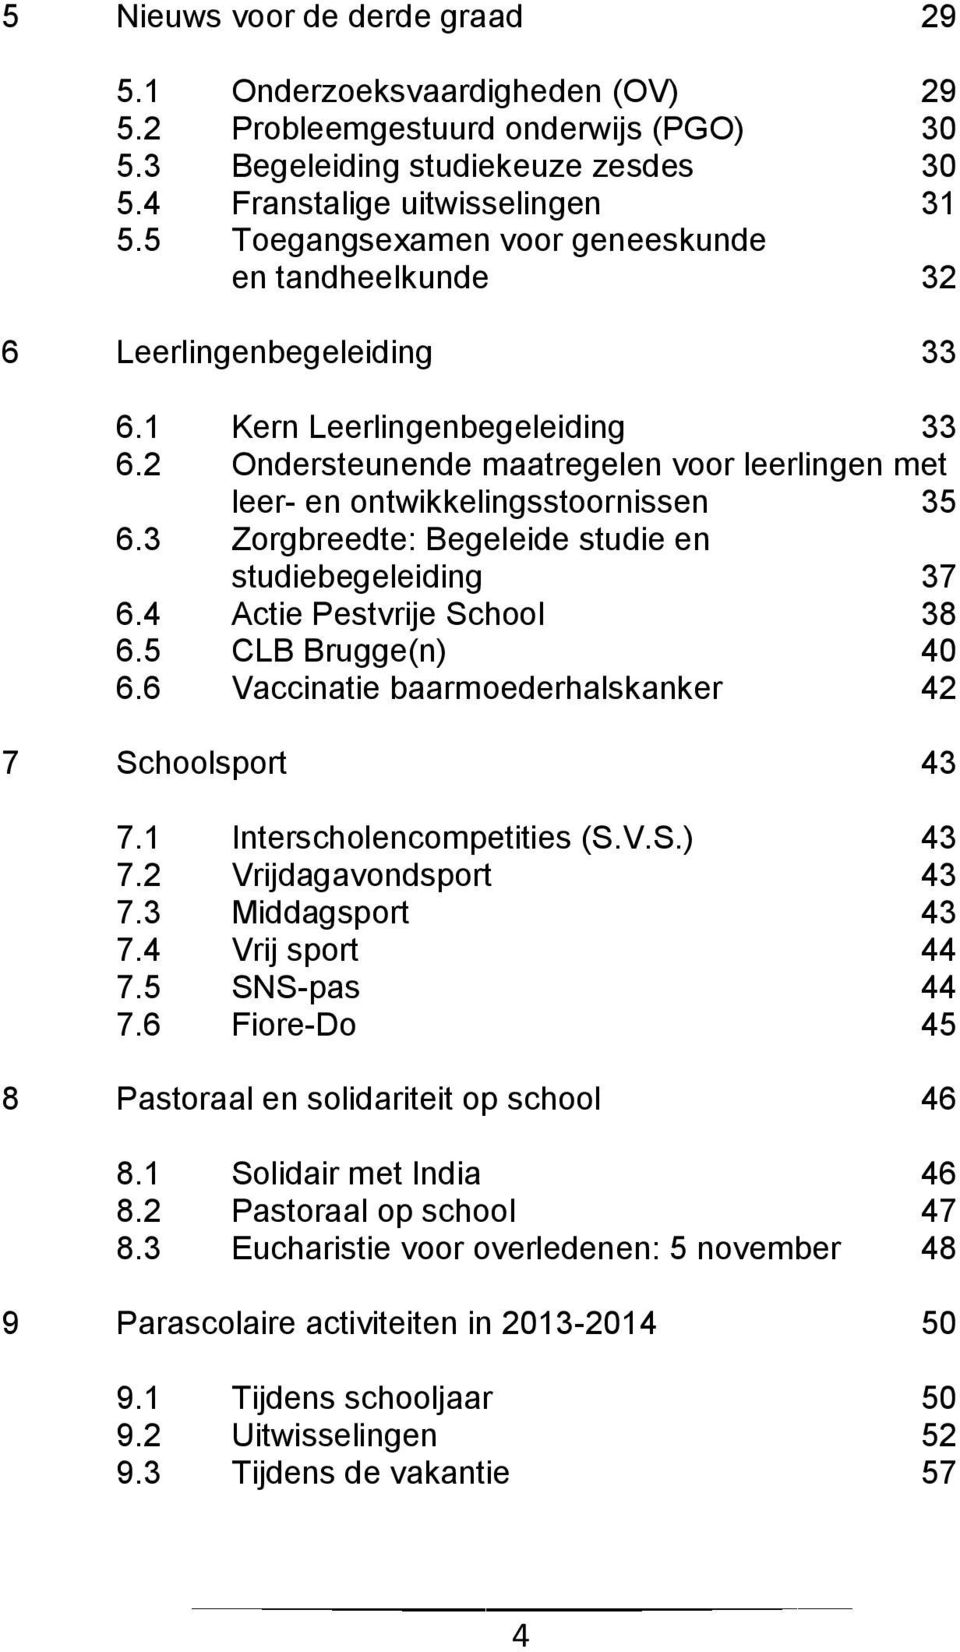 2 Ondersteunende maatregelen voor leerlingen met leer- en ontwikkelingsstoornissen 35 6.3 Zorgbreedte: Begeleide studie en studiebegeleiding 37 6.4 Actie Pestvrije School 38 6.5 CLB Brugge(n) 40 6.